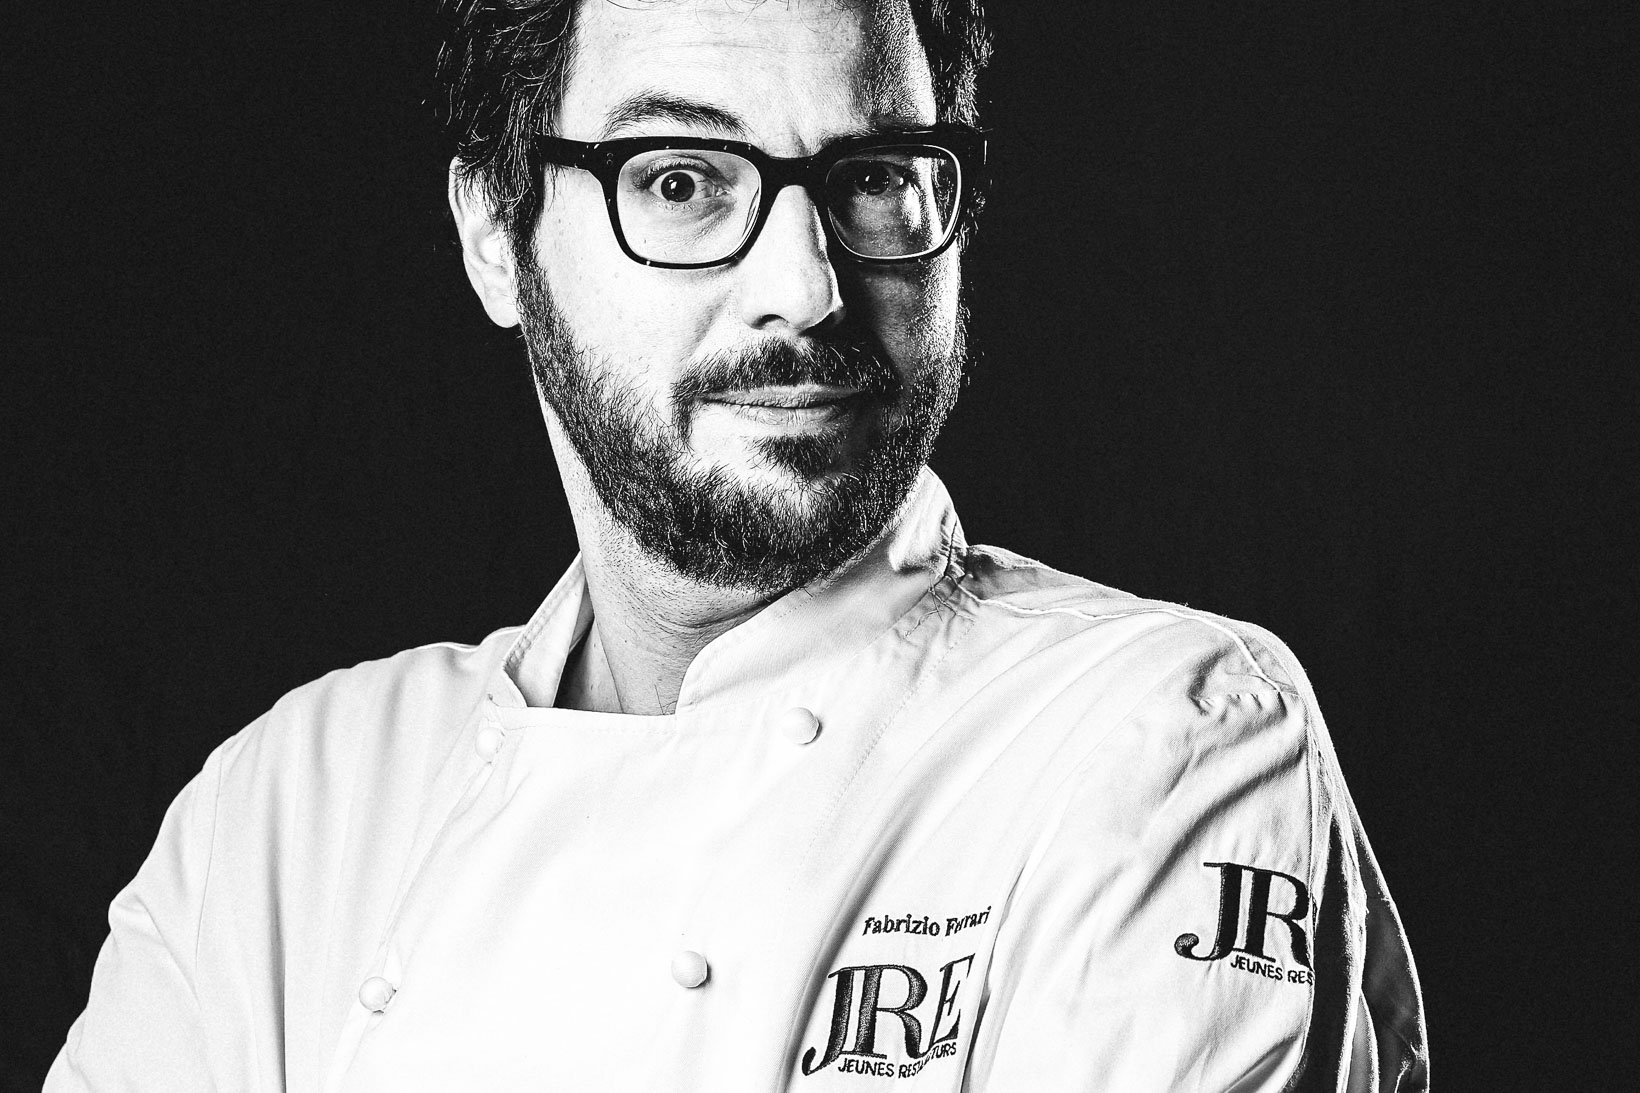 Rui-Lorenzo-Fotografo-food-chef-fabrizio-ferrari-ristorante-al-porticciolo-84-lecco-jre-_RUI0172_web